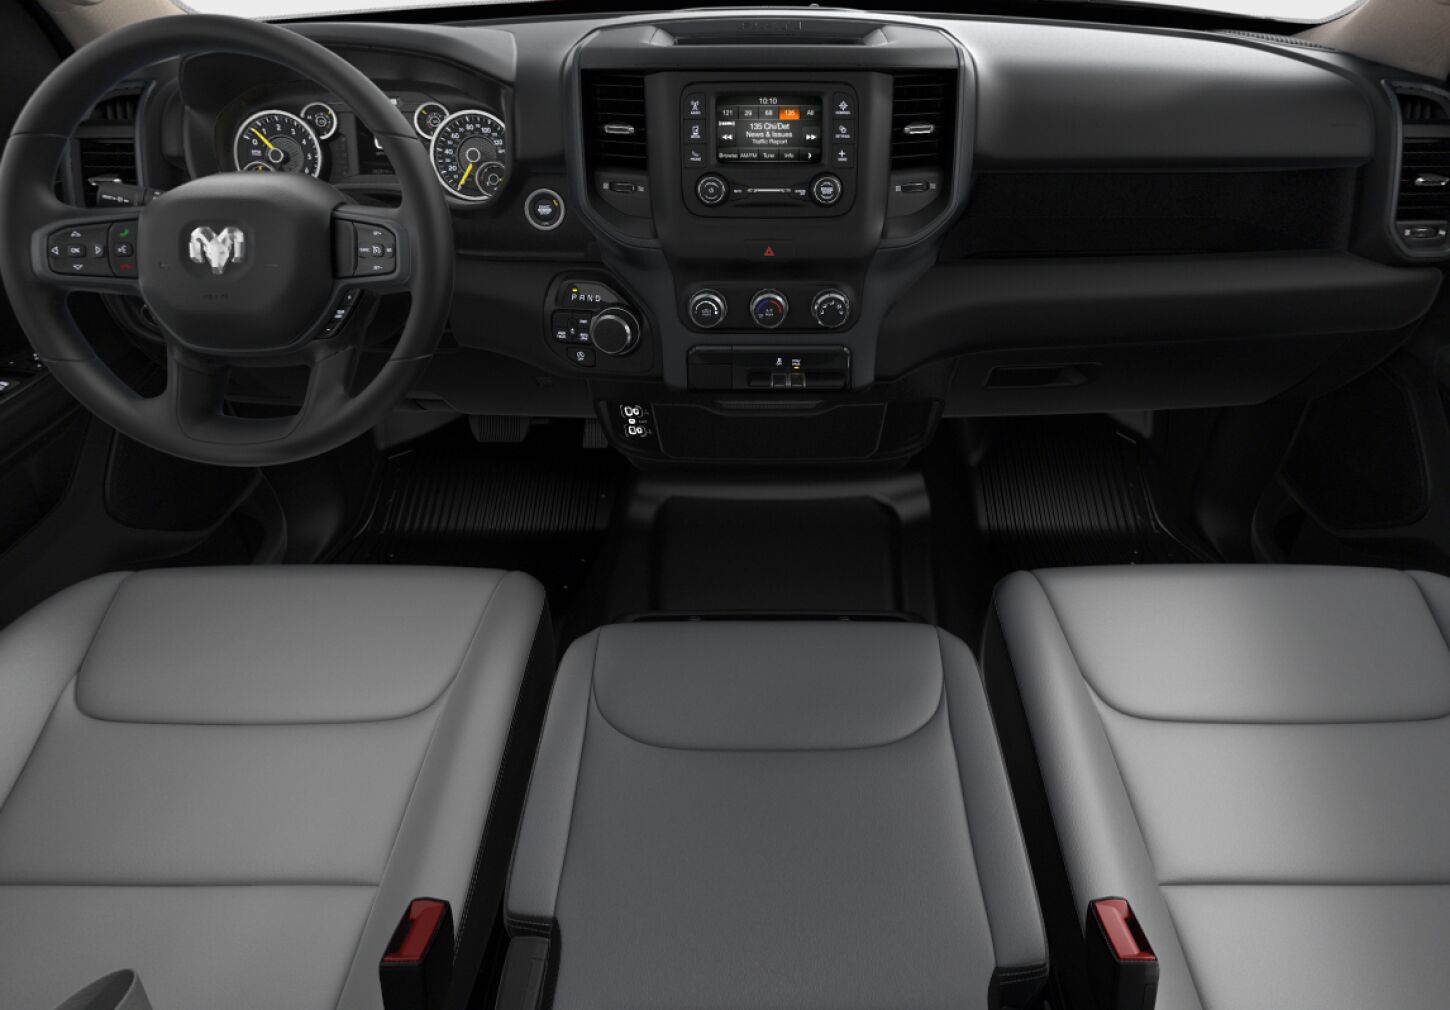 2019 Ram 1500 Tradesman Quad Cab Milford Jeep Dodge